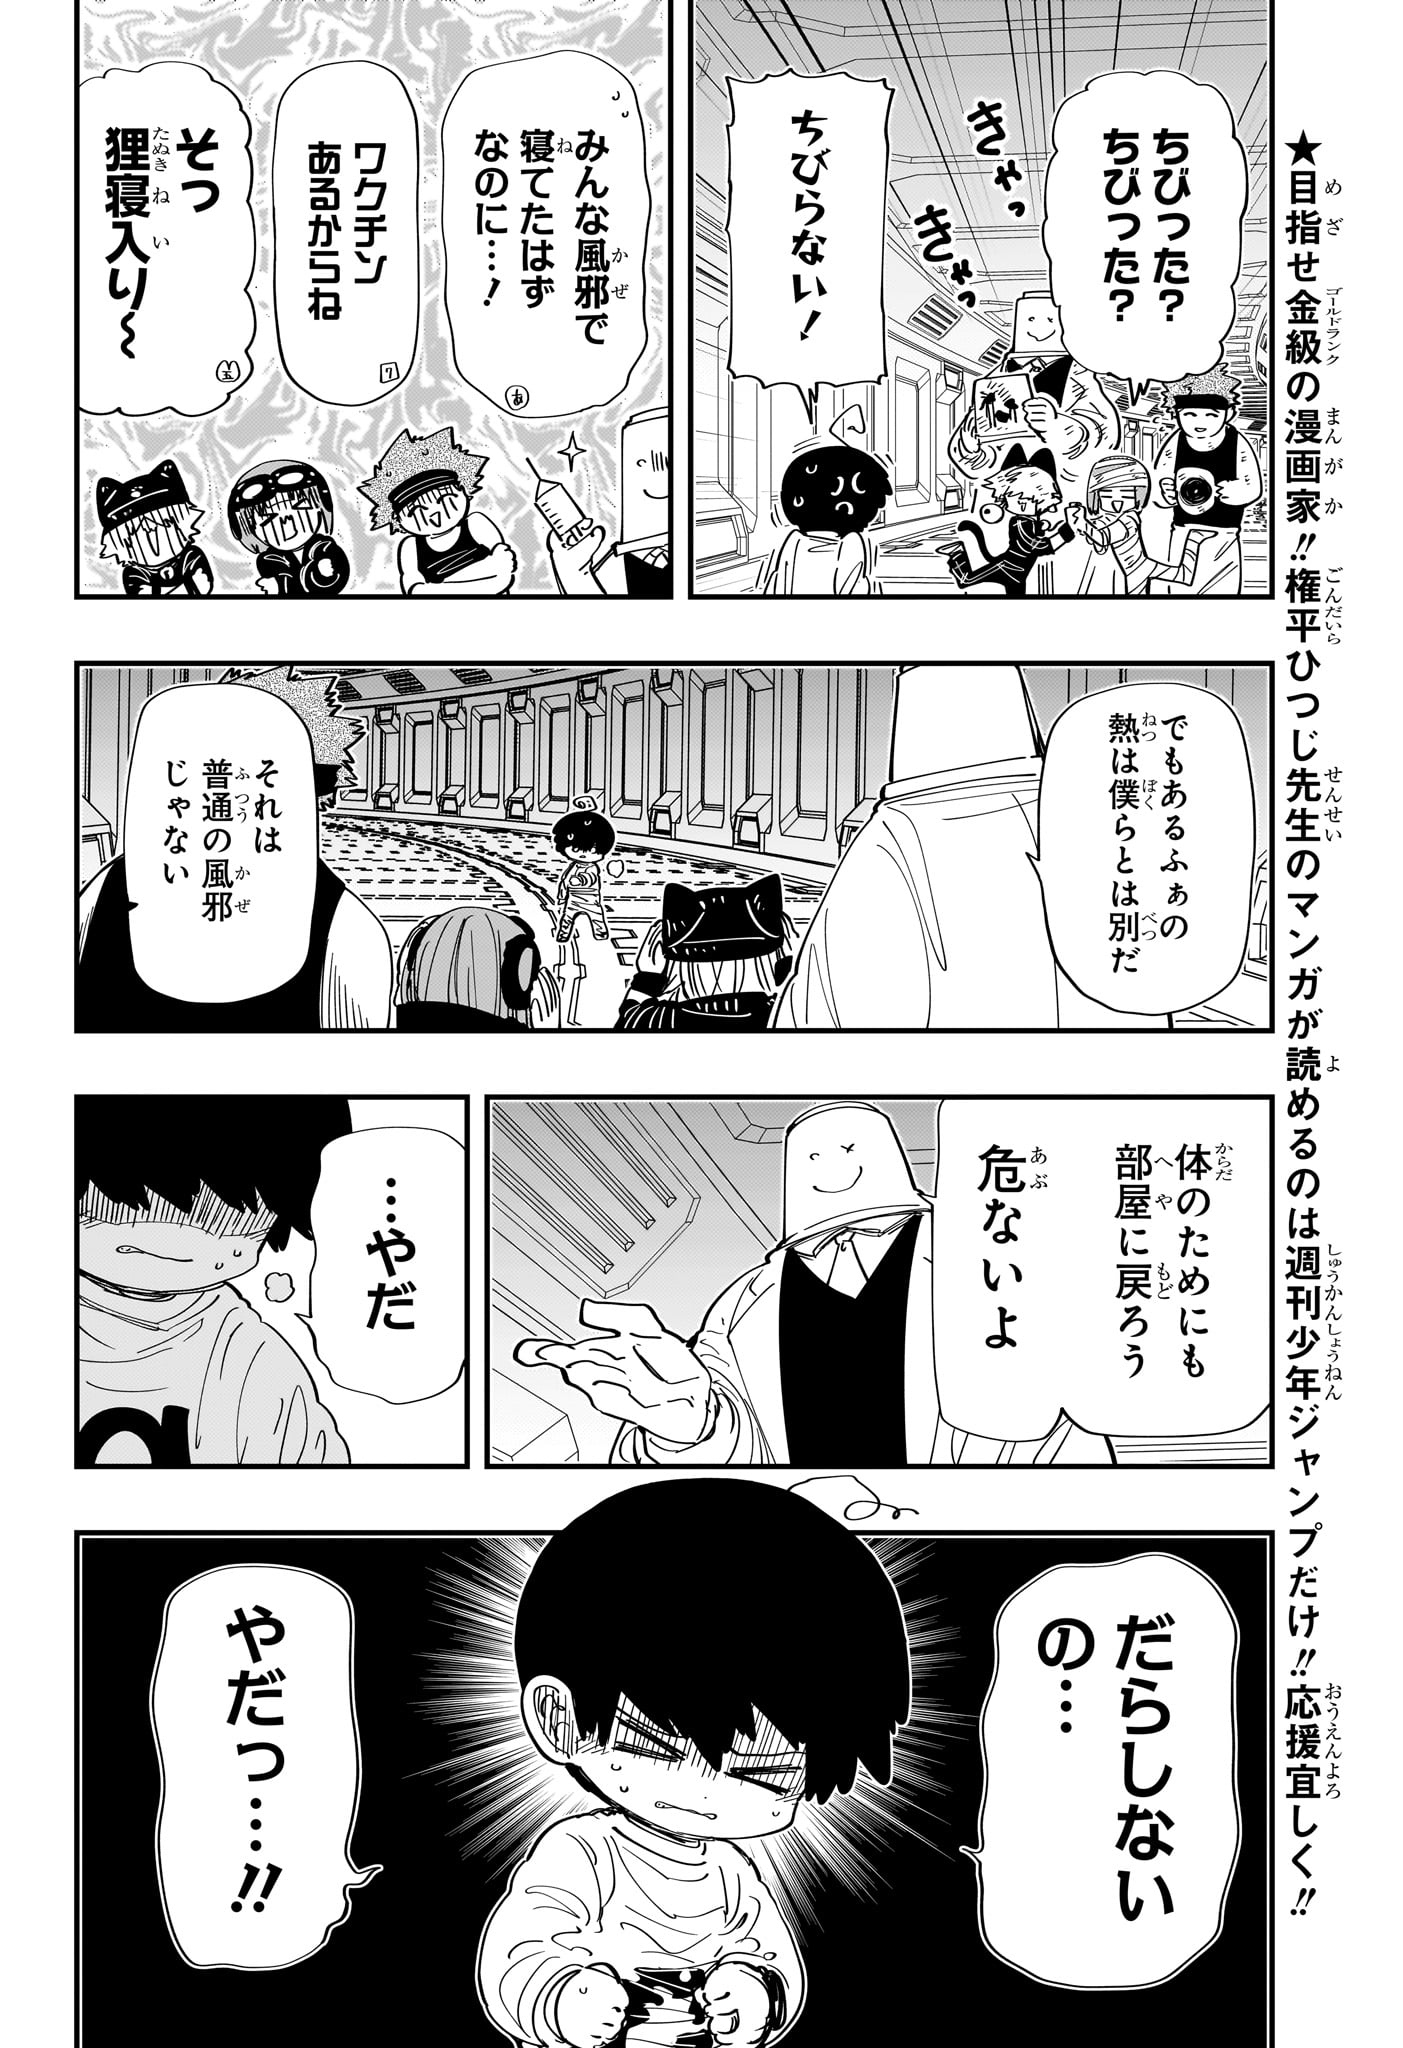 Yozakura-san Chi no Daisakusen - Chapter 218 - Page 2